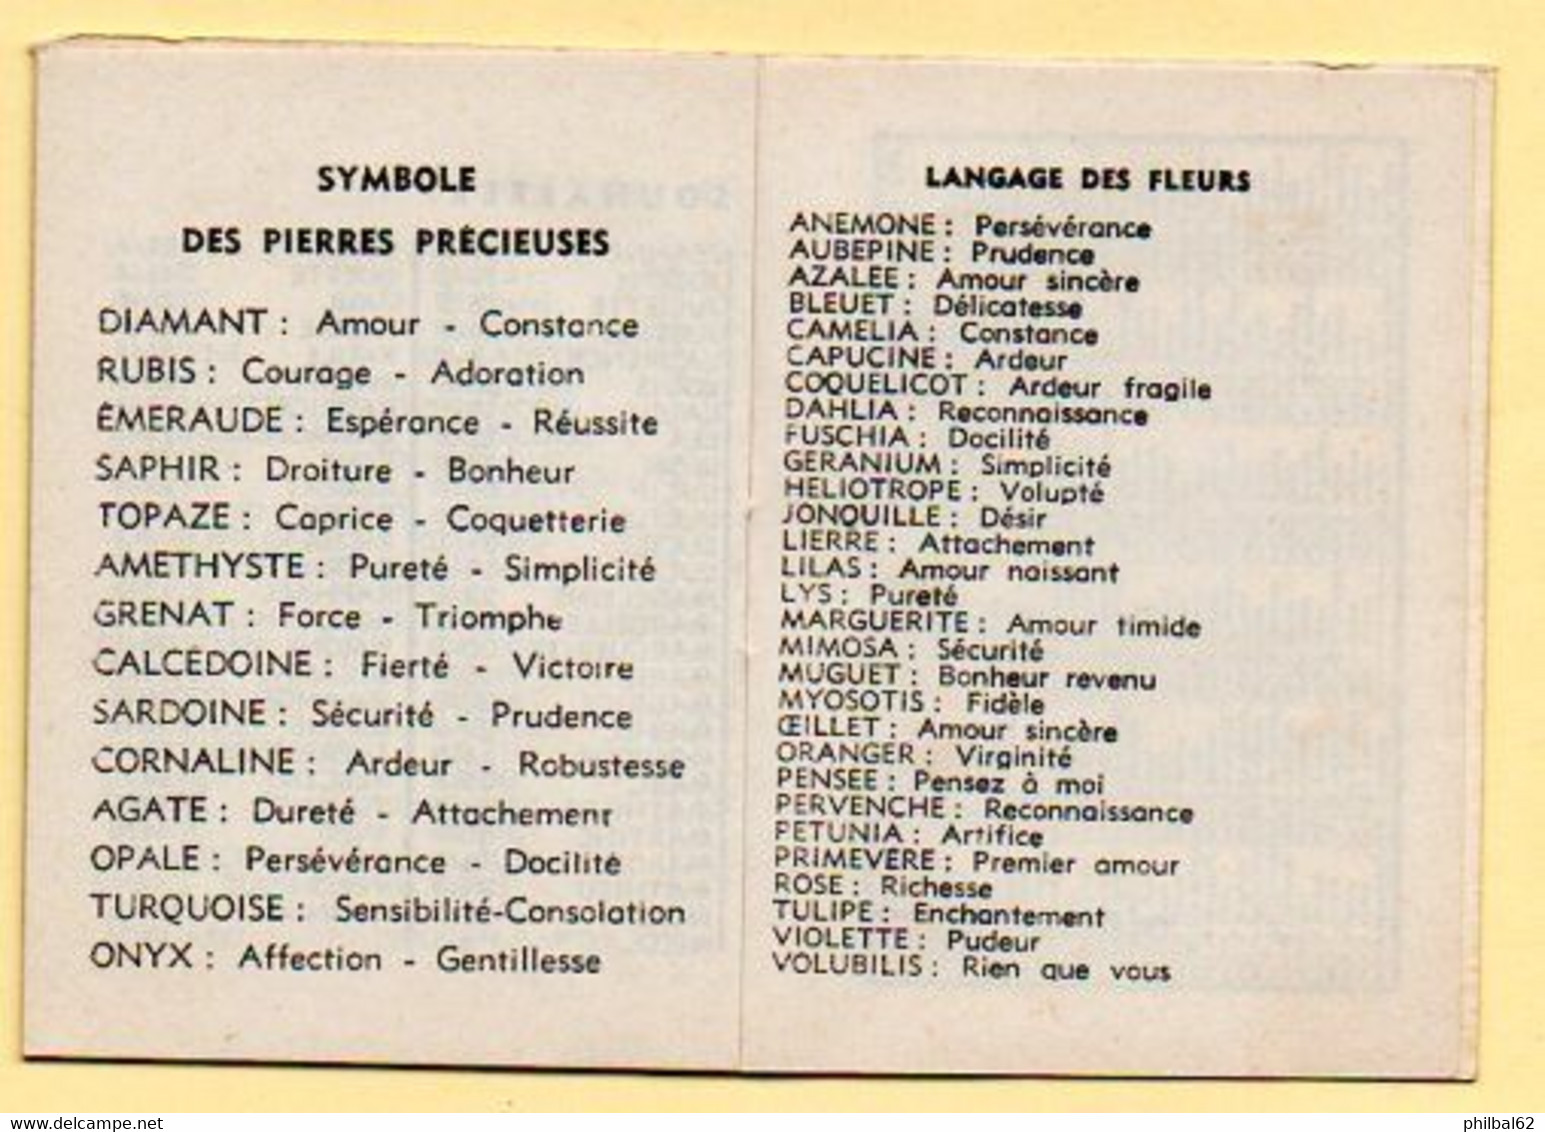 Petit Almanach Calendrier 1964. Le Bois Fleuri, Françoise Fleurs à Paris. - Petit Format : 1961-70